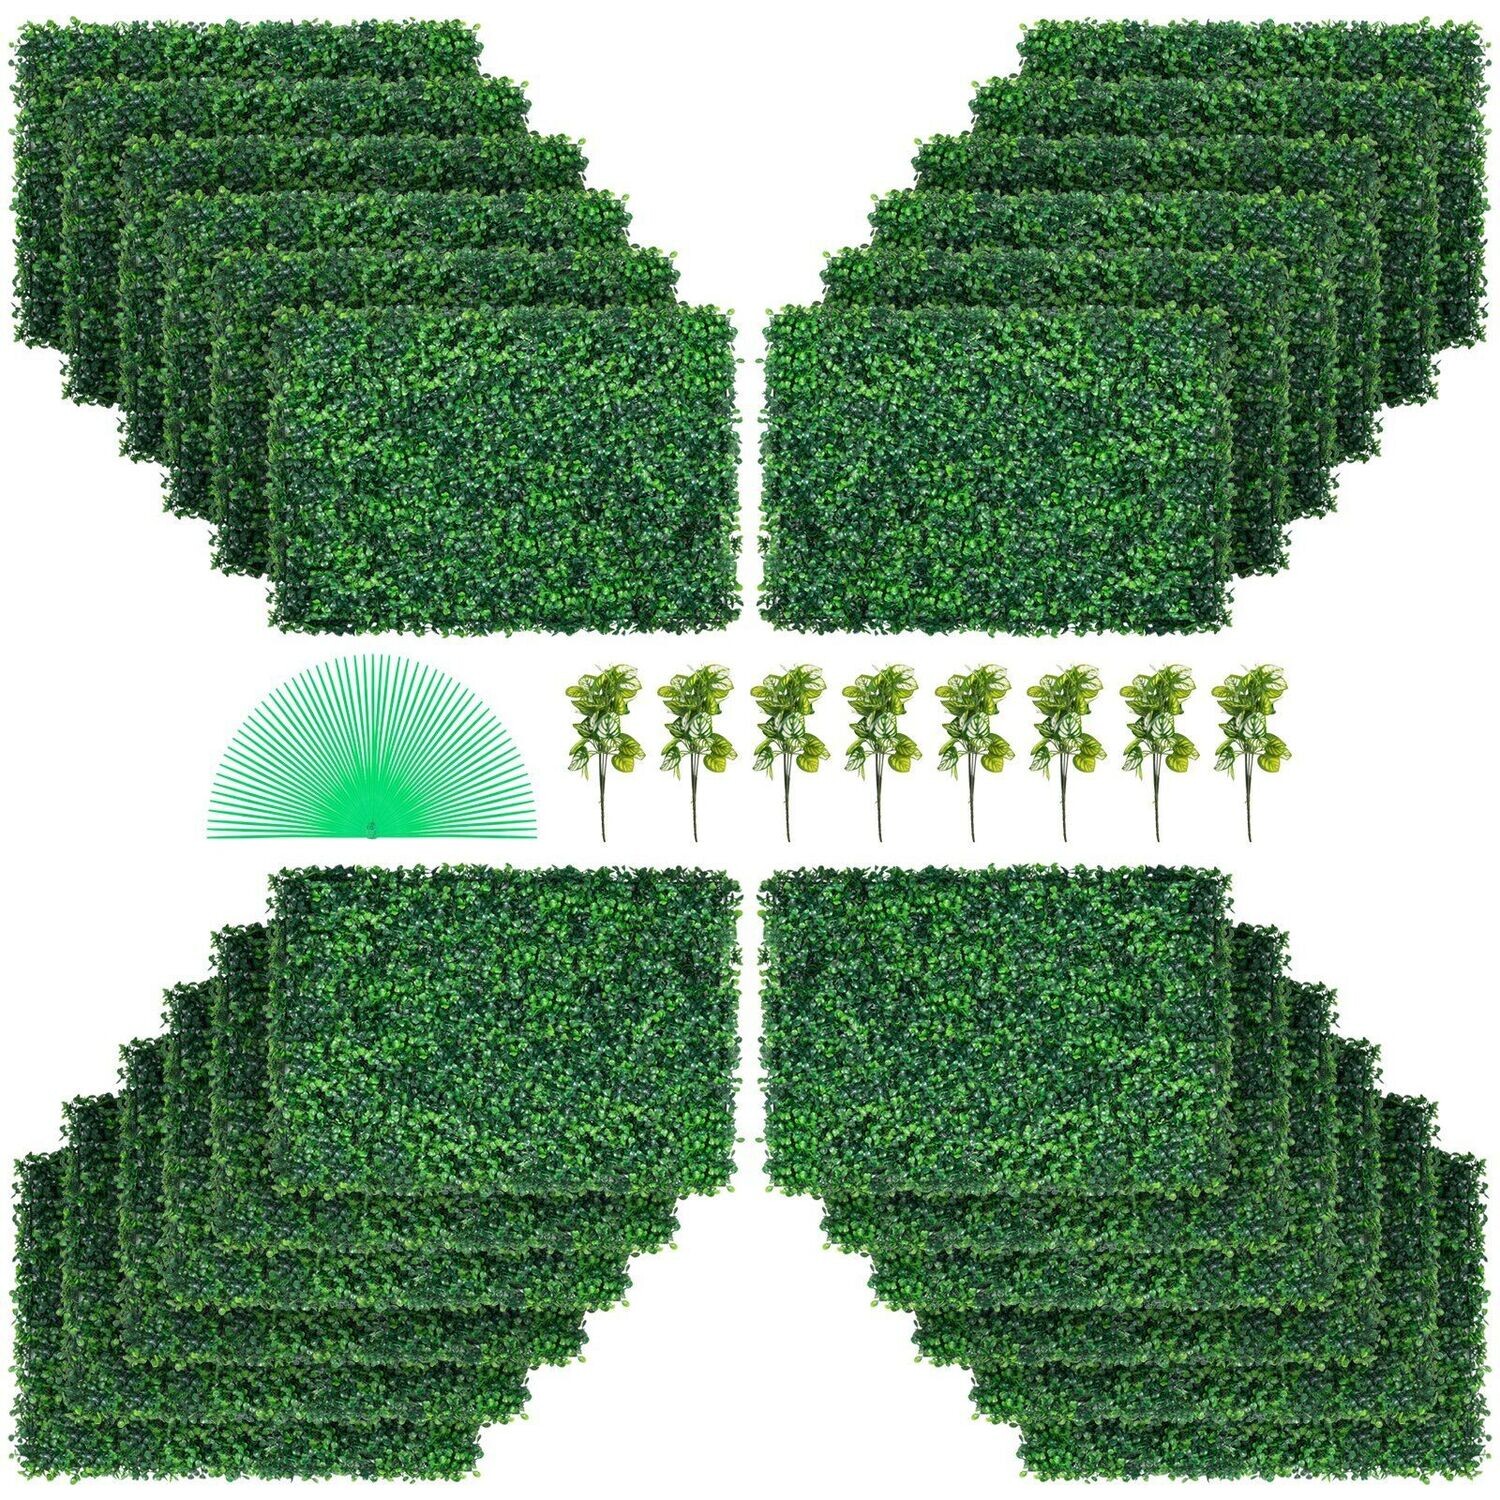 Künstliche Pflanzenwand 24 Stk. Sichtschutz Hecke Künstlich Grün, Künstliche Buchsbaumplatte PE, Sichtschutz Kunstpflanzen 60 x 40 cm, Sichtschutzhecke Wanddekoration Pflanzenwand